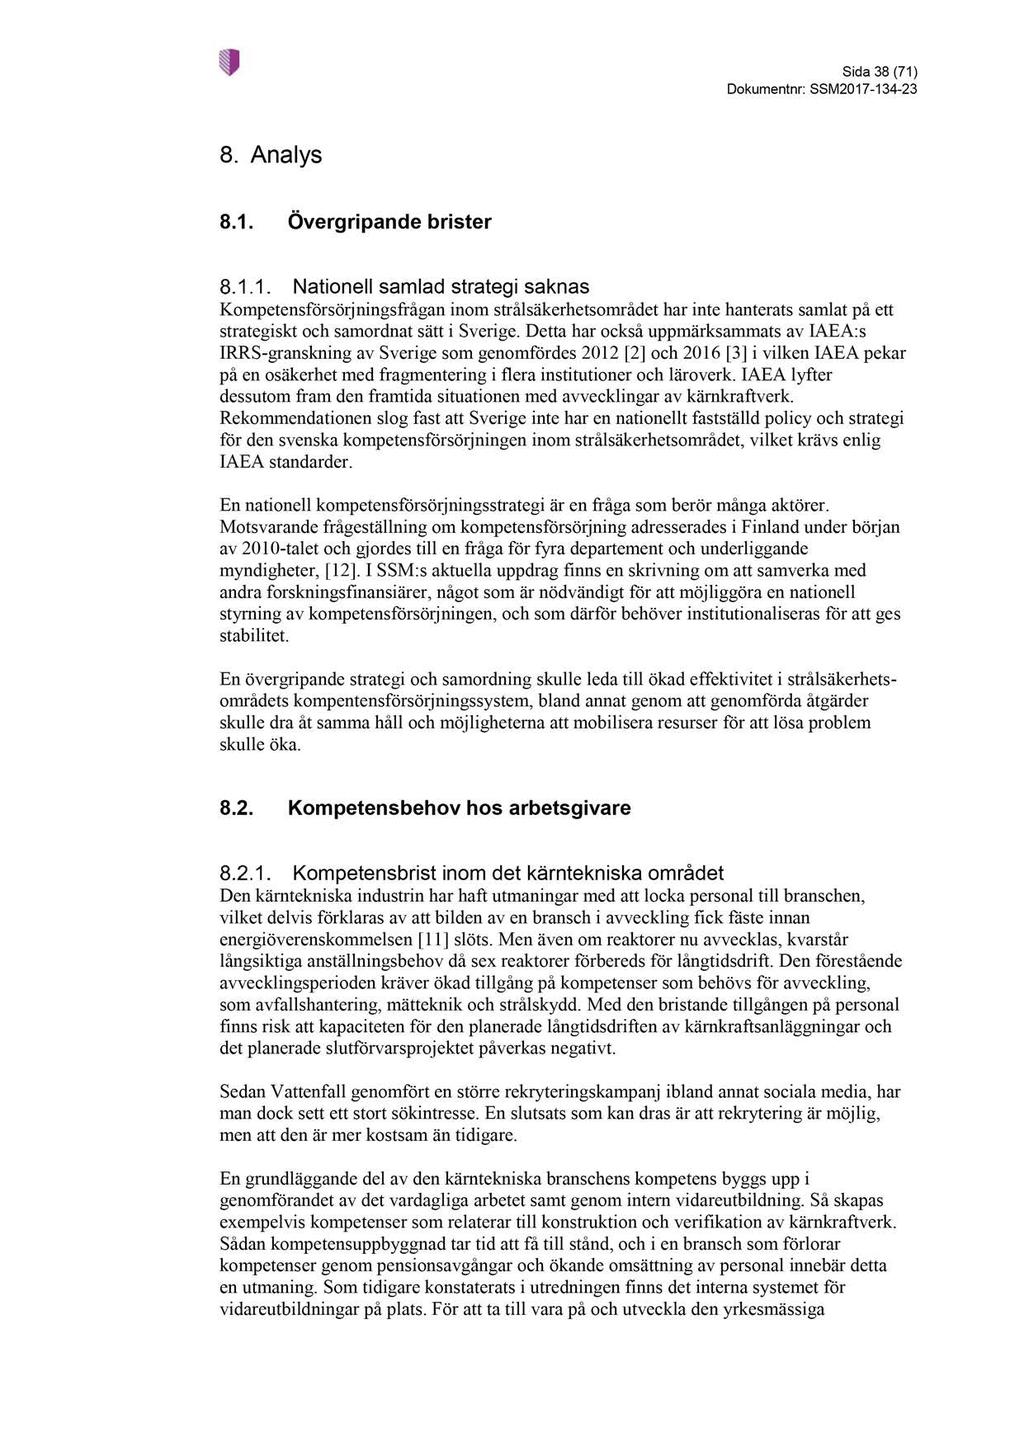 Sida 38 ( 71 ) Dokumentnr : SSM2017-134 - 23 8. Analys 8.1. Övergripande brister Nationell samlad strategi saknas Kompetensförsörjningsfrågan inom strålsäkerhetsområdet har inte hanterat samlat på ett strategiskt och samordnat sätt i Sverige.